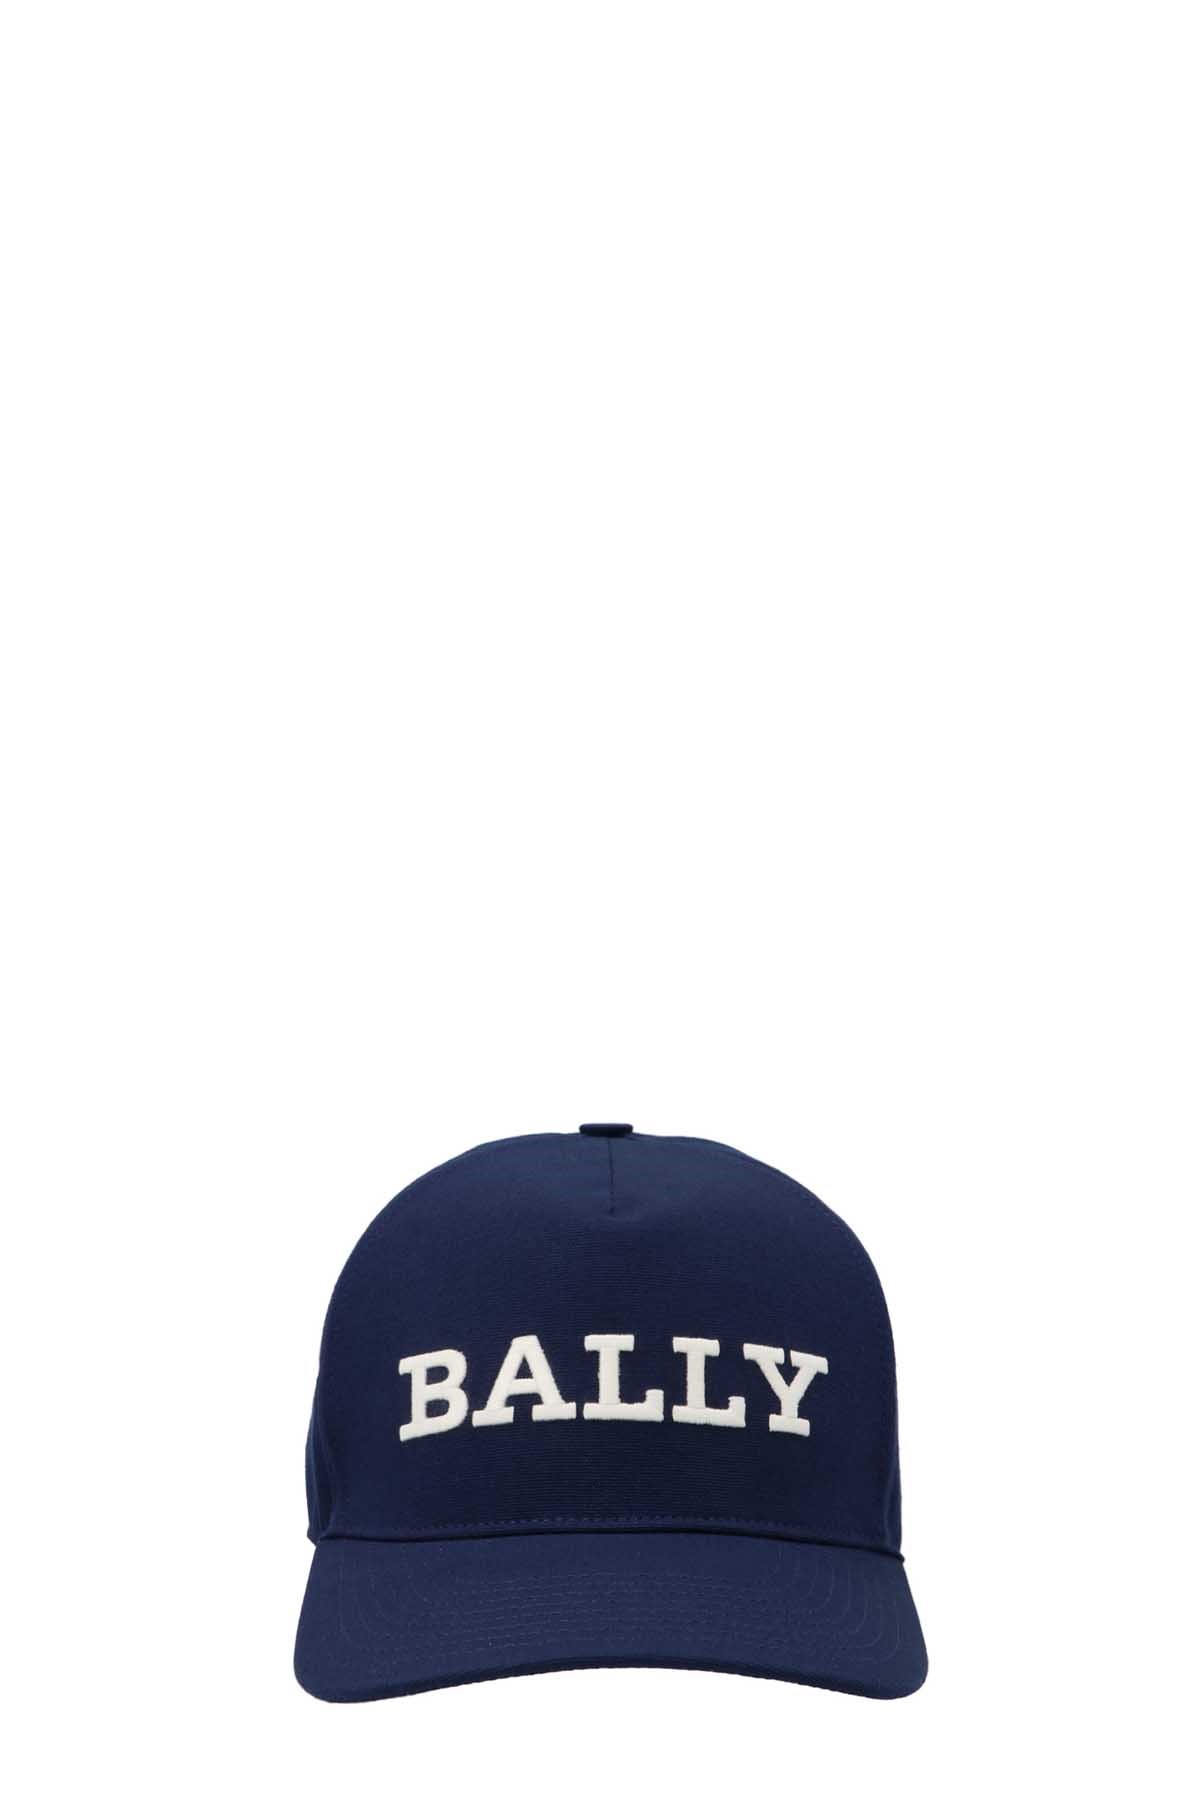 BALLY Logo Cap